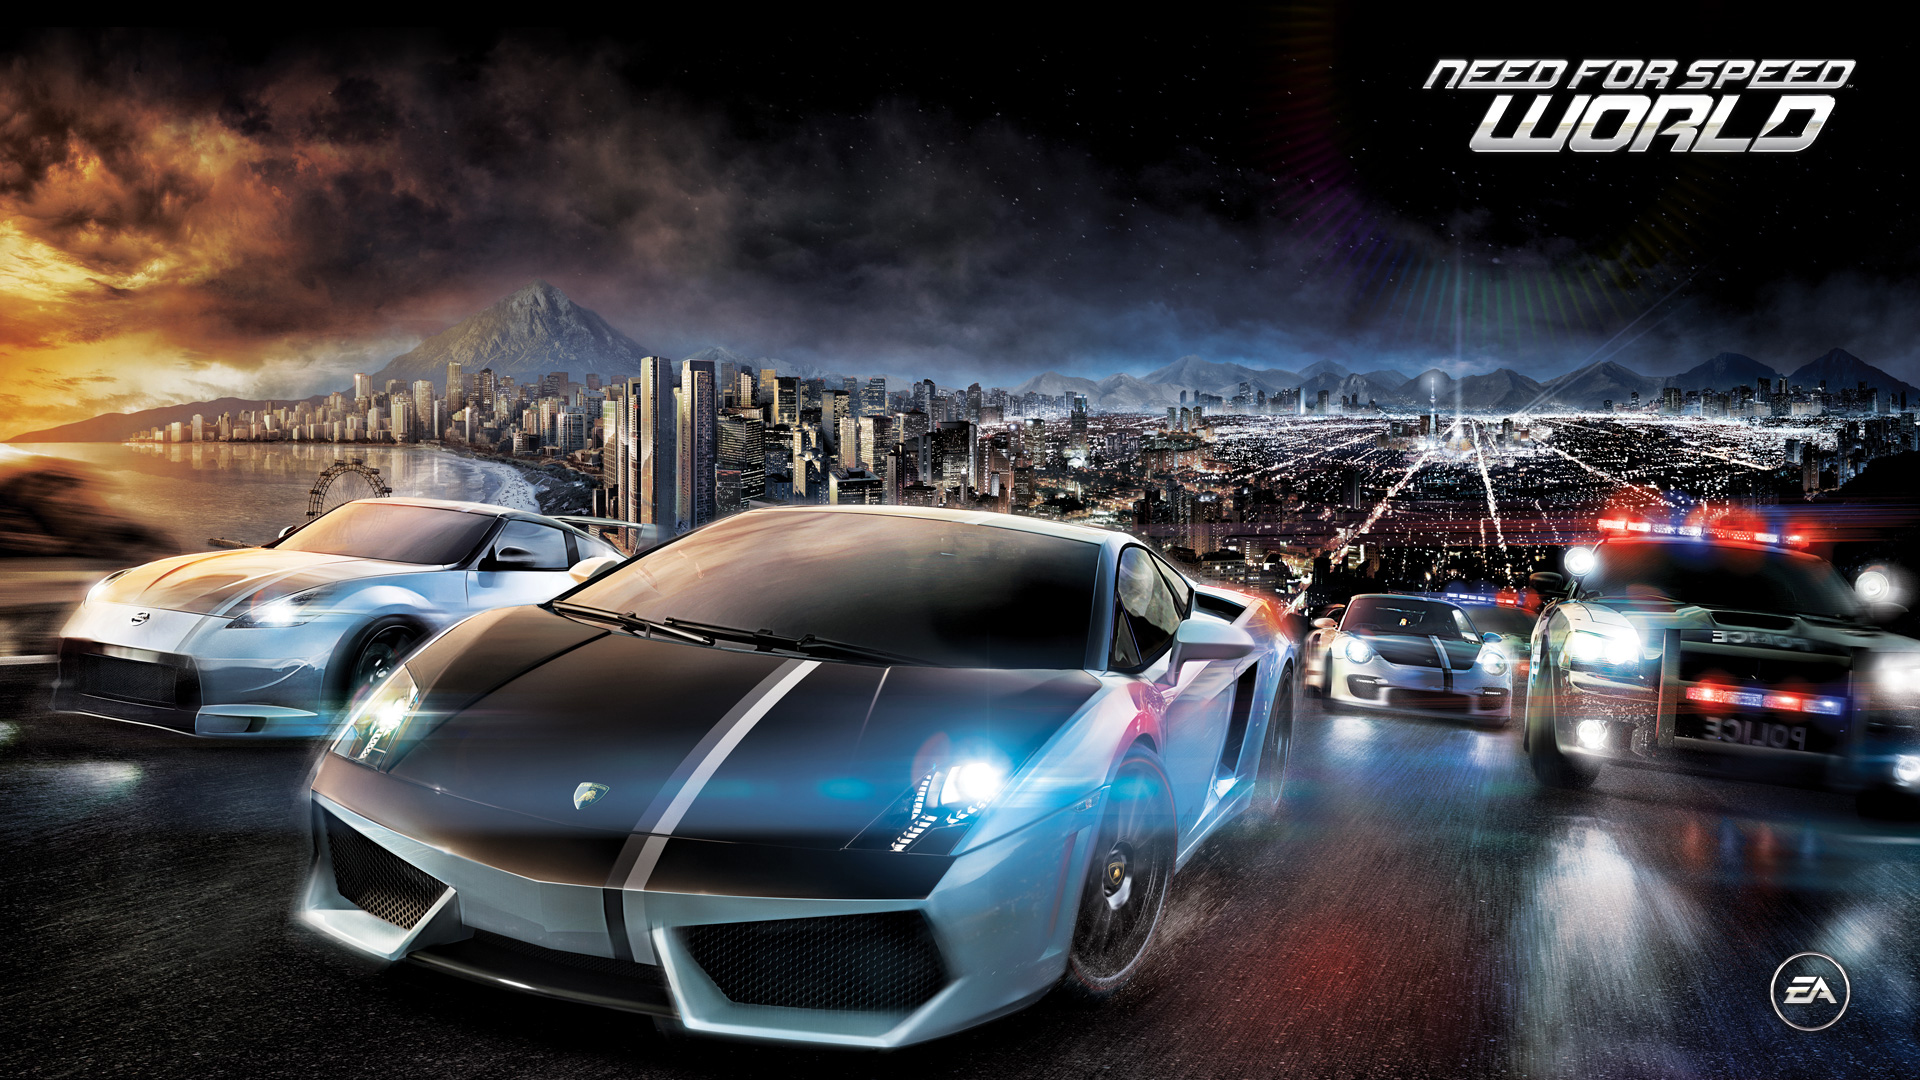 Laden Sie Need For Speed: World HD-Desktop-Hintergründe herunter